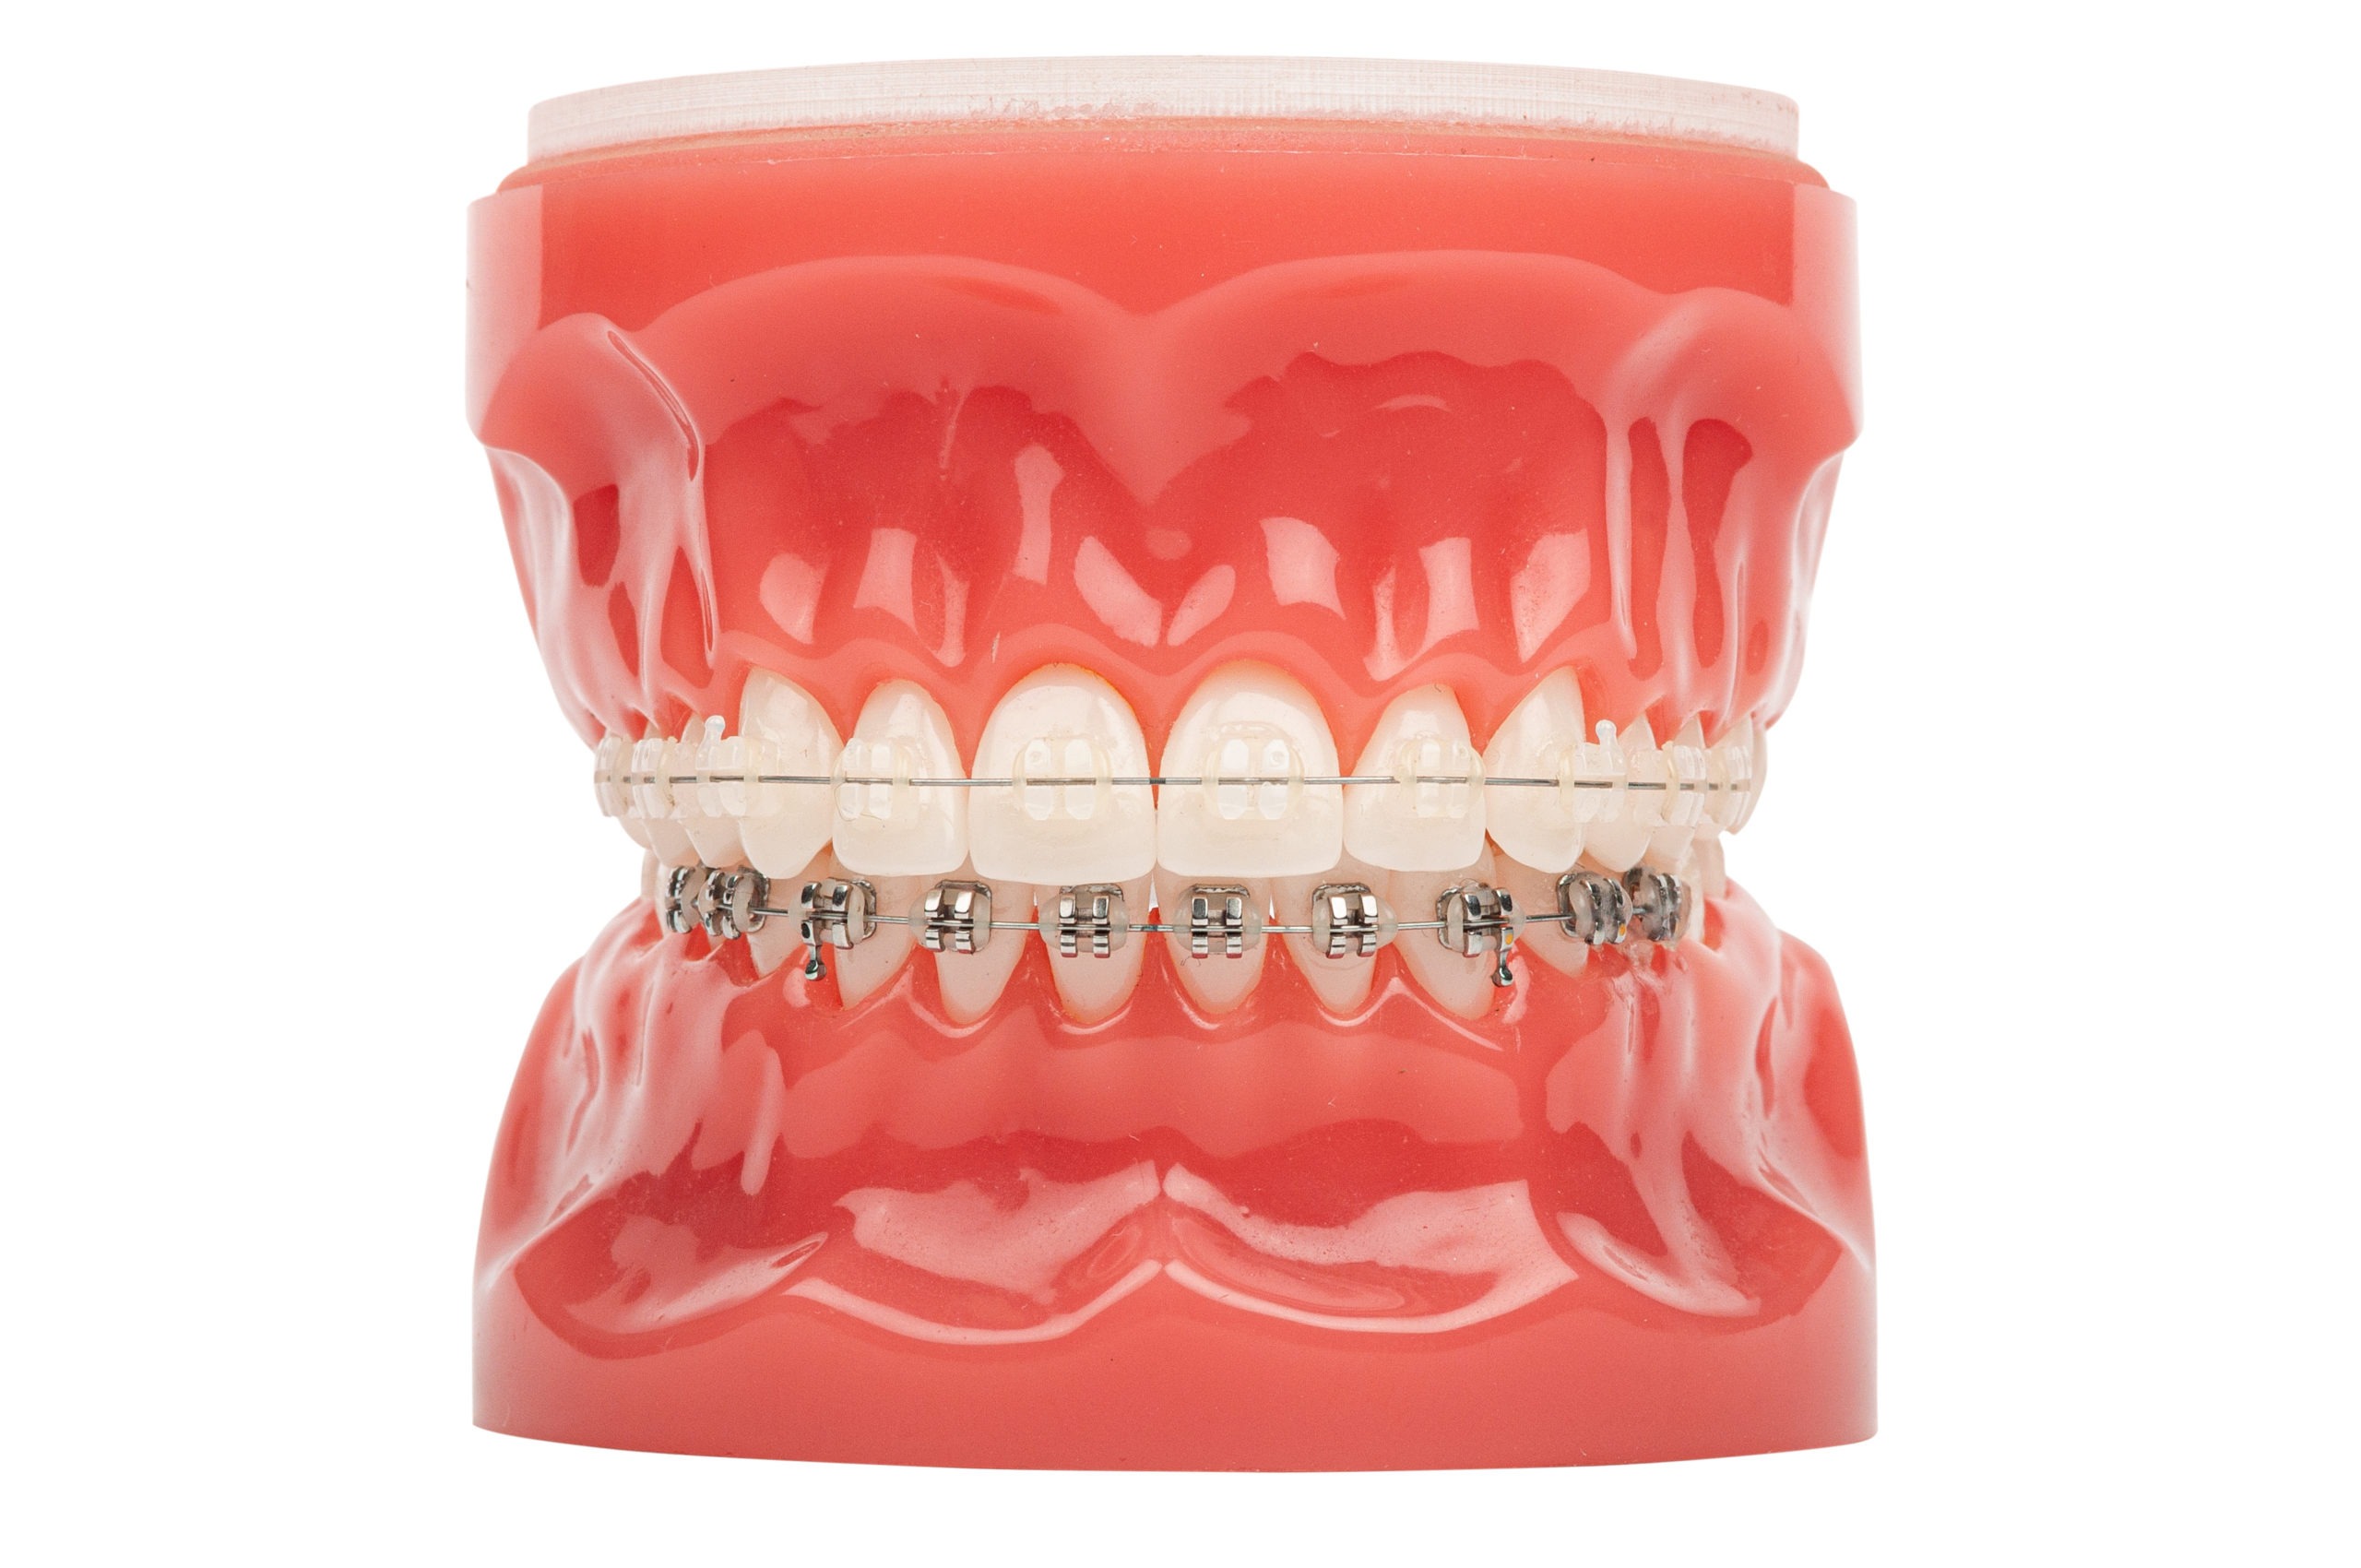 Orthodontic model demonstration teeth model of orthodontic brack